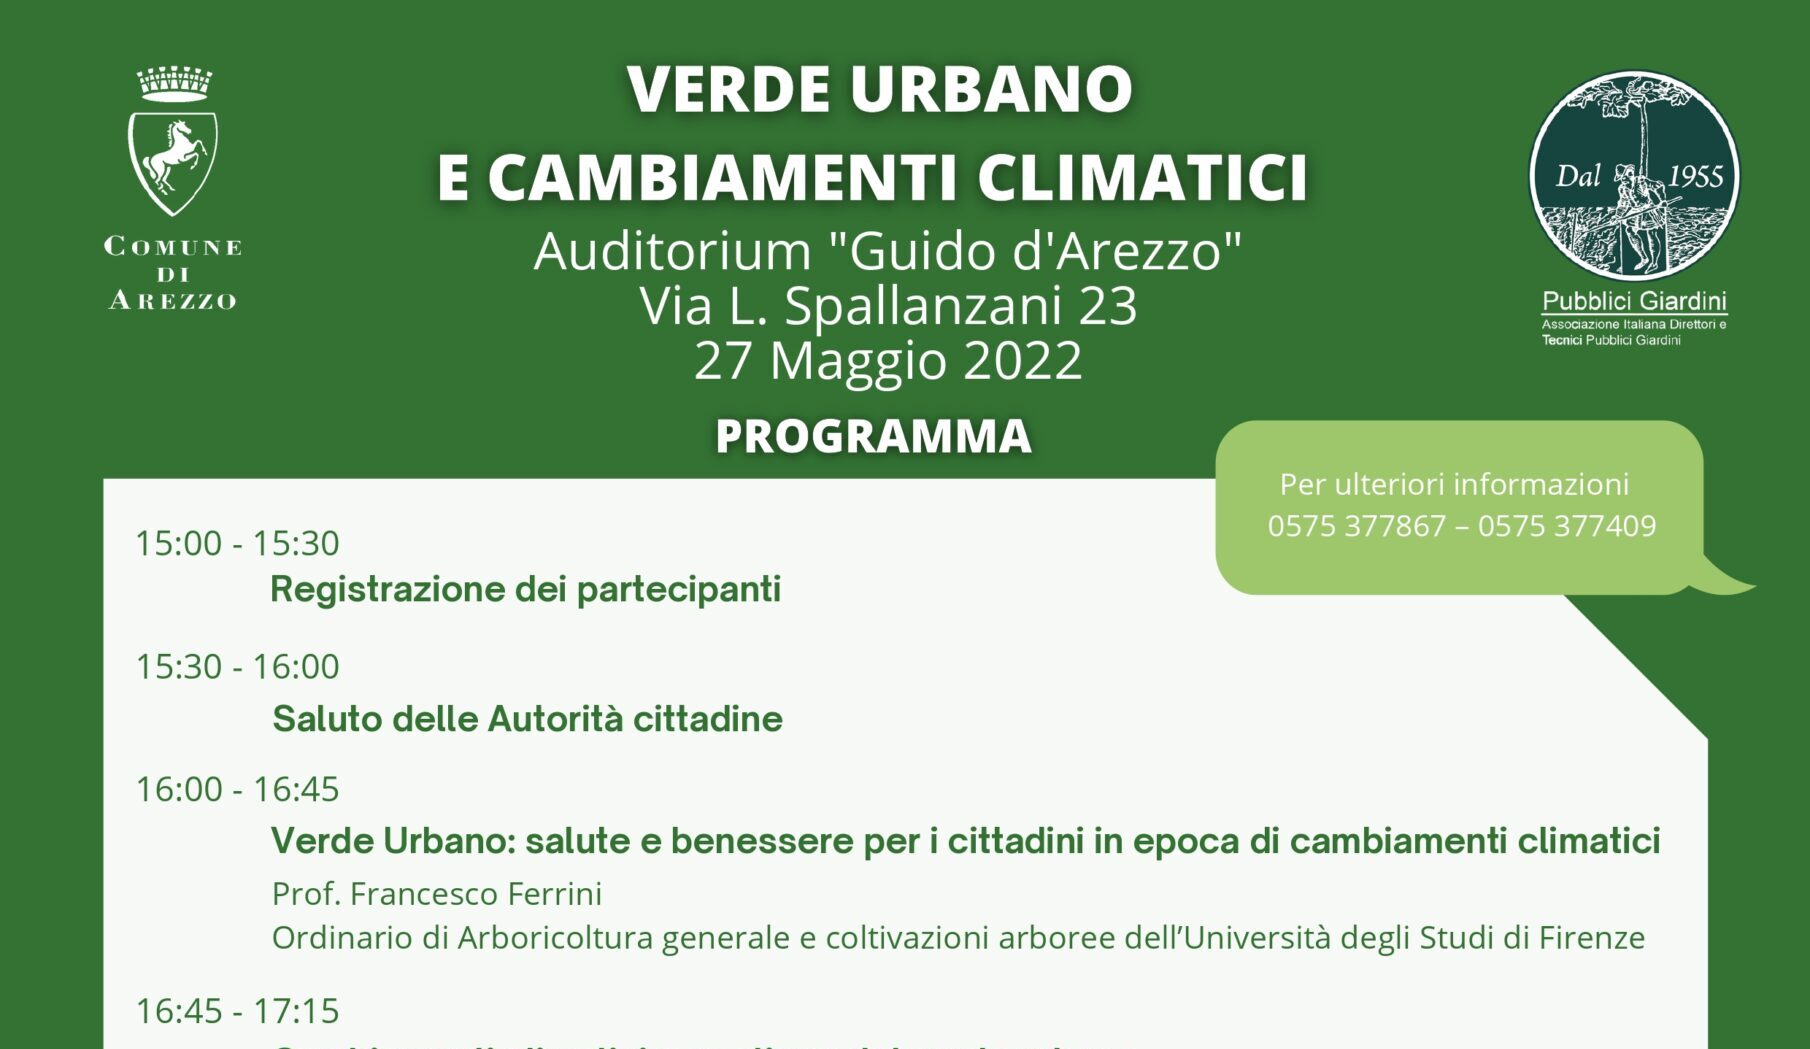 “Verde Urbano e Cambiamenti Climatici”: venerdì 27 maggio all’Auditorium “Guido d’Arezzo”